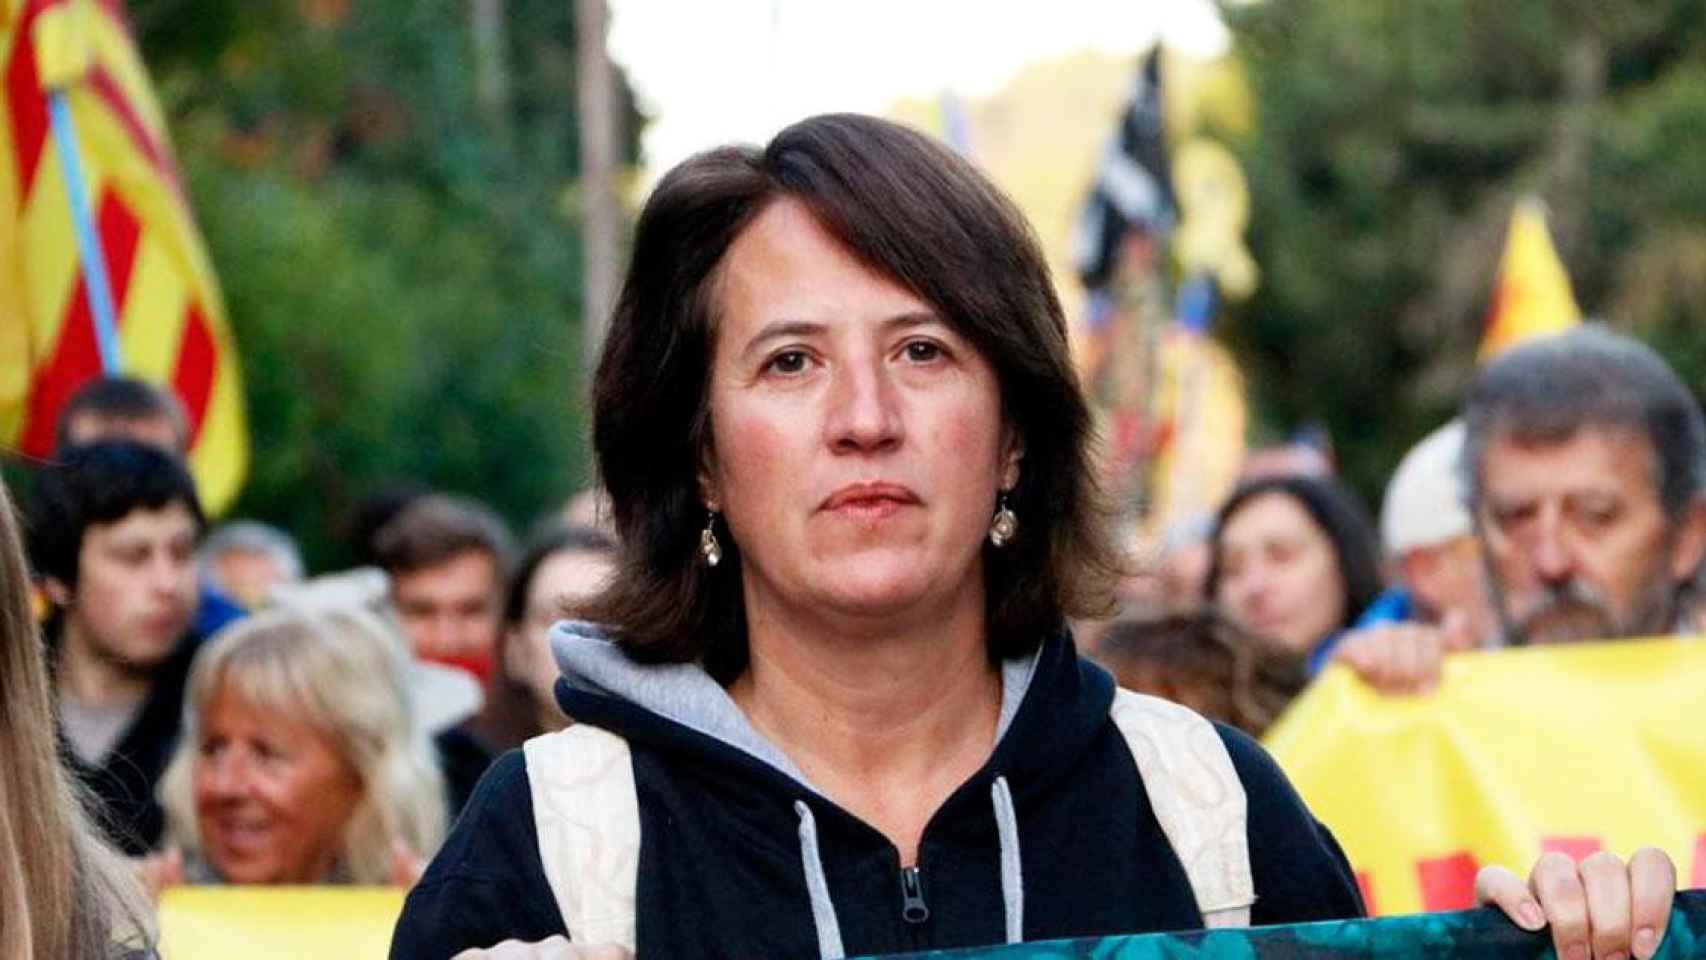 Imagen de Elisenda Paluzie, presidenta de la Assemblea Nacional Catalana (ANC), en una manifestación / EFE